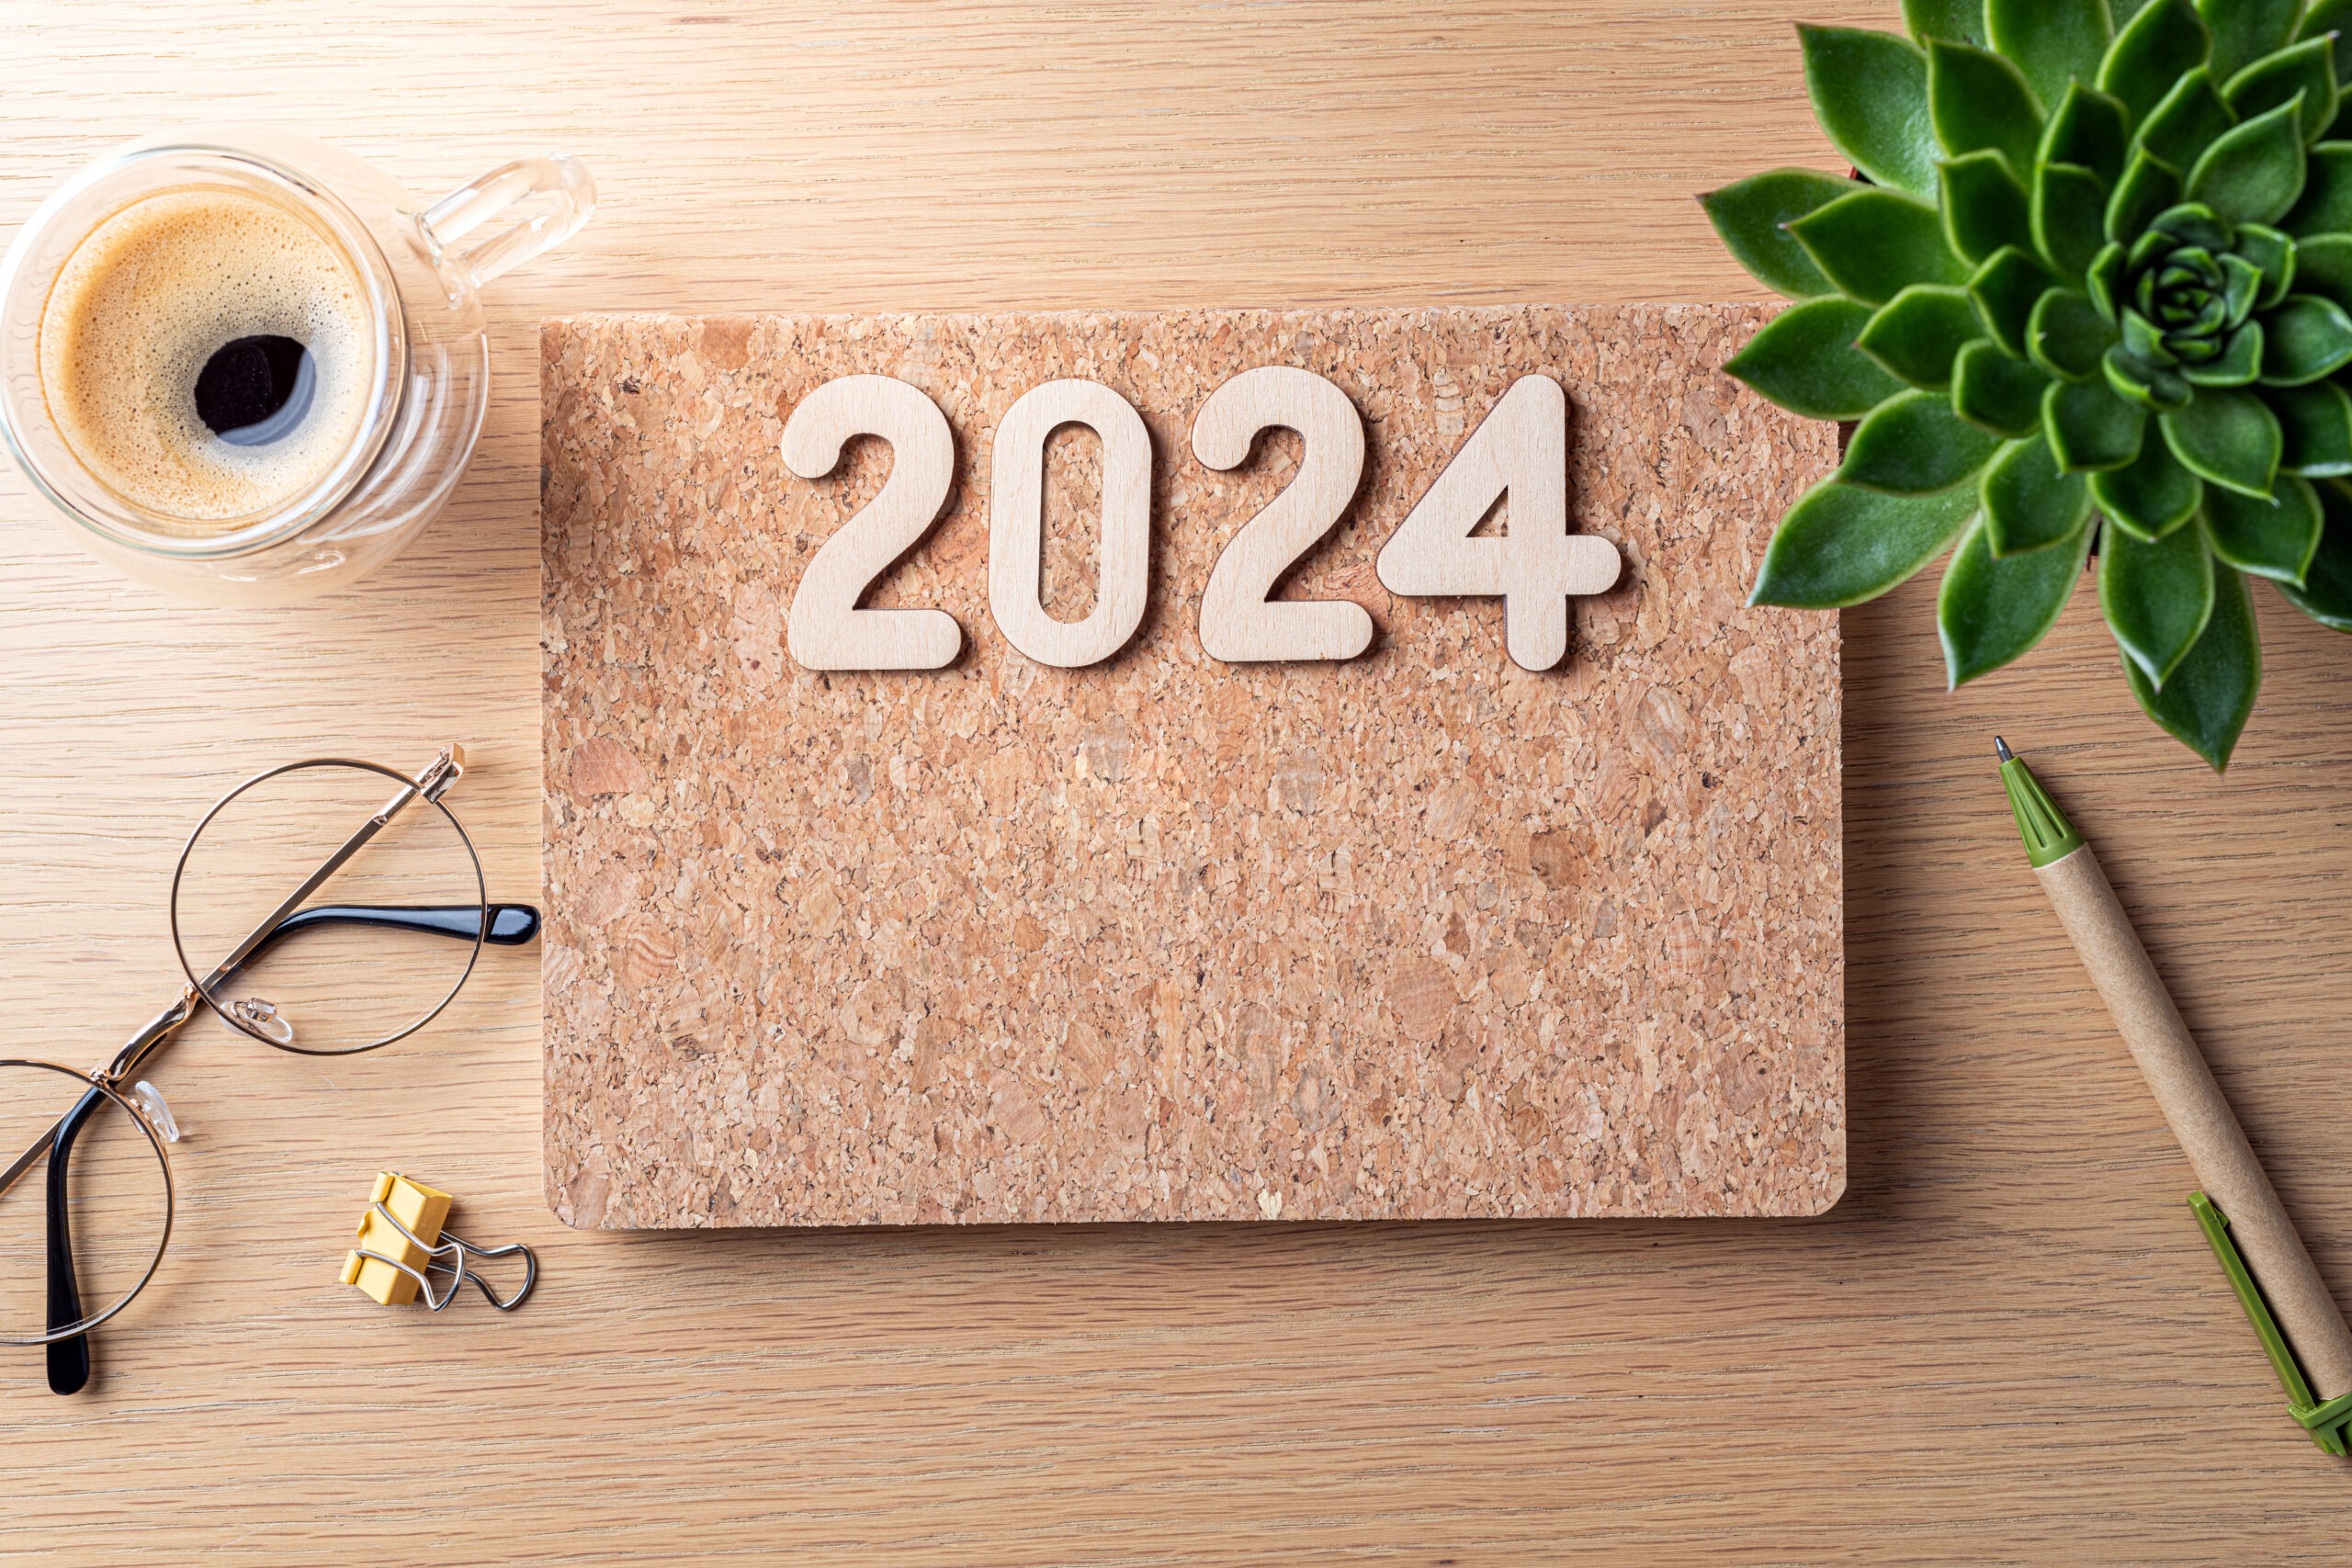 Projet de loi de finance de 2024. Bureau avec carnet, tasse à café, plante sur table en bois.